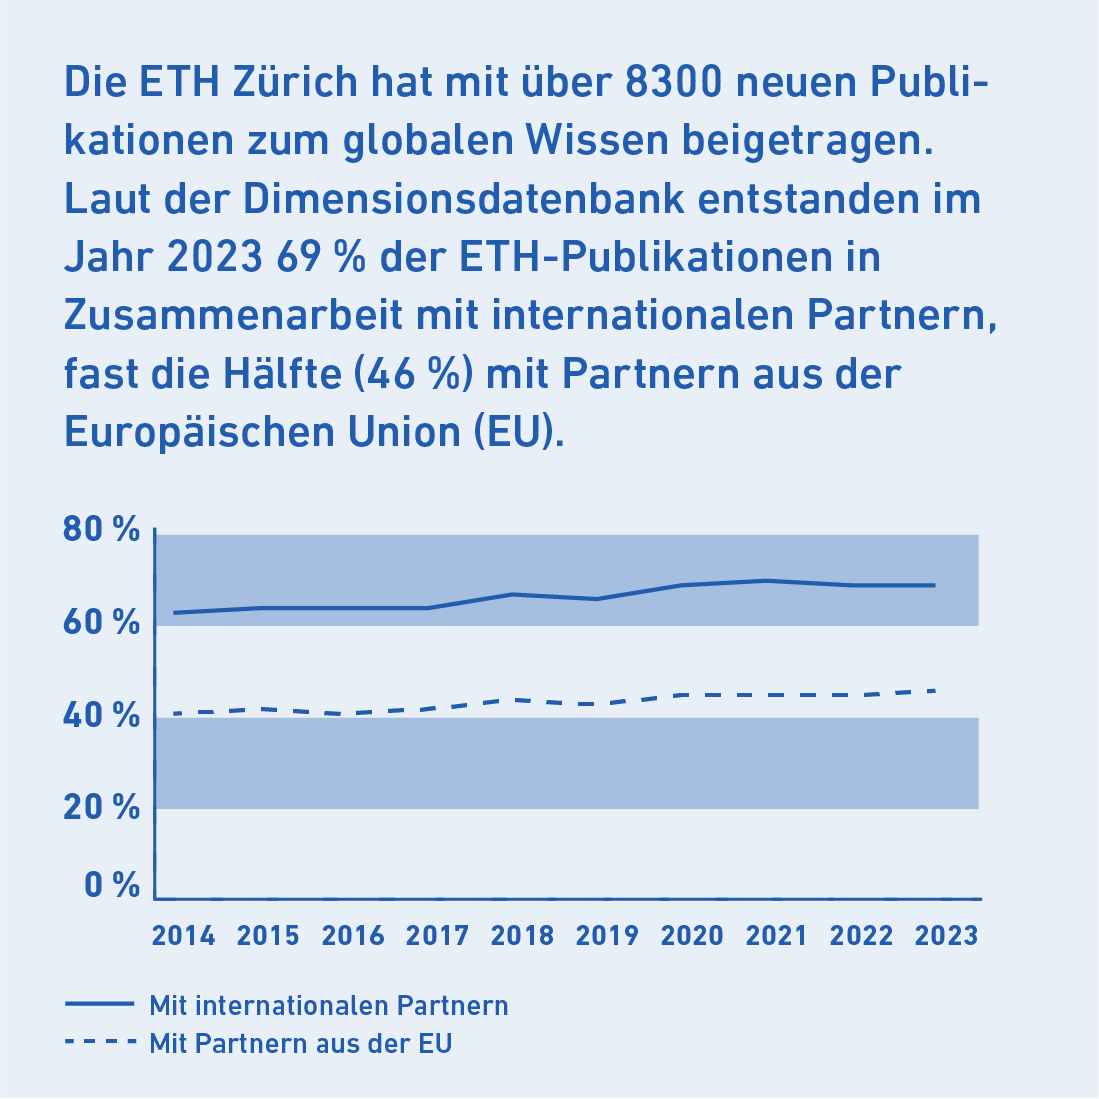 Die ETH Zürich hat mit über 8300 neuen Publikationen zum globalen Wissen beigetragen. Laut der Dimensionsdatenbank entstanden im Jahr 2023 69% der ETH-Publikationen in Zusammenarbeit mit internationalen Partnern, davon fast die Hälfte (46%) mit Partnern aus der Europäischen Union (EU). Link zum Wertschöpfungsmodell.